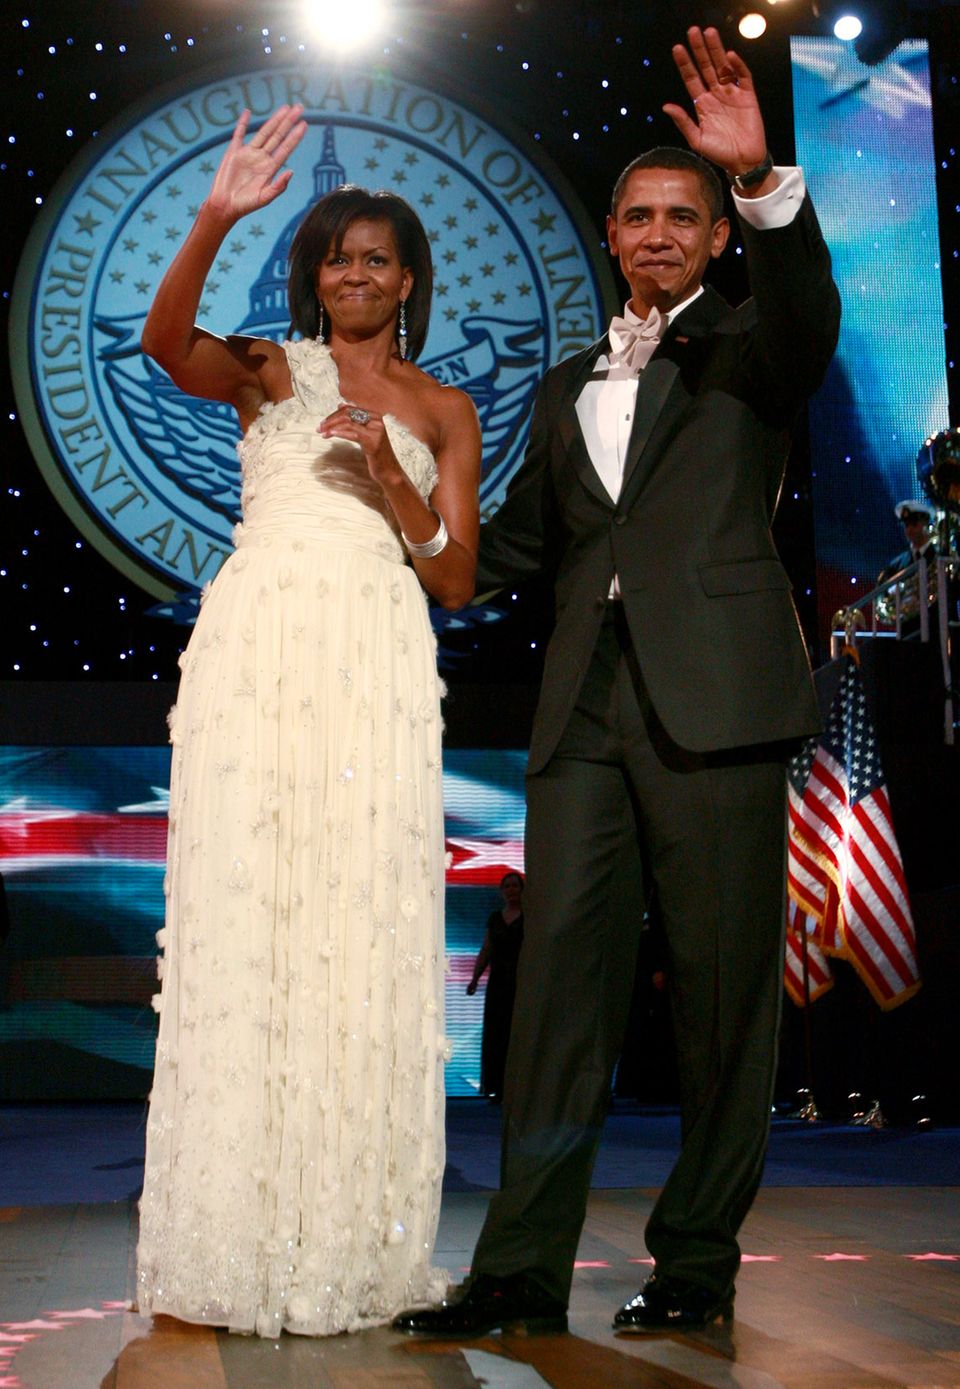 Abends beim Ball bezaubert die frischgebackene First Lady Michelle Obama im einem traumhaften weißen Ballkleid. Bei dem Designer ihres One-Shoulder-Kleides handelt es sich um Jason Wu, ein bis dato noch eher unbekannten Designer. Natürlich konnte er sich nach diesem Auftritt kaum vor Aufträgen retten.